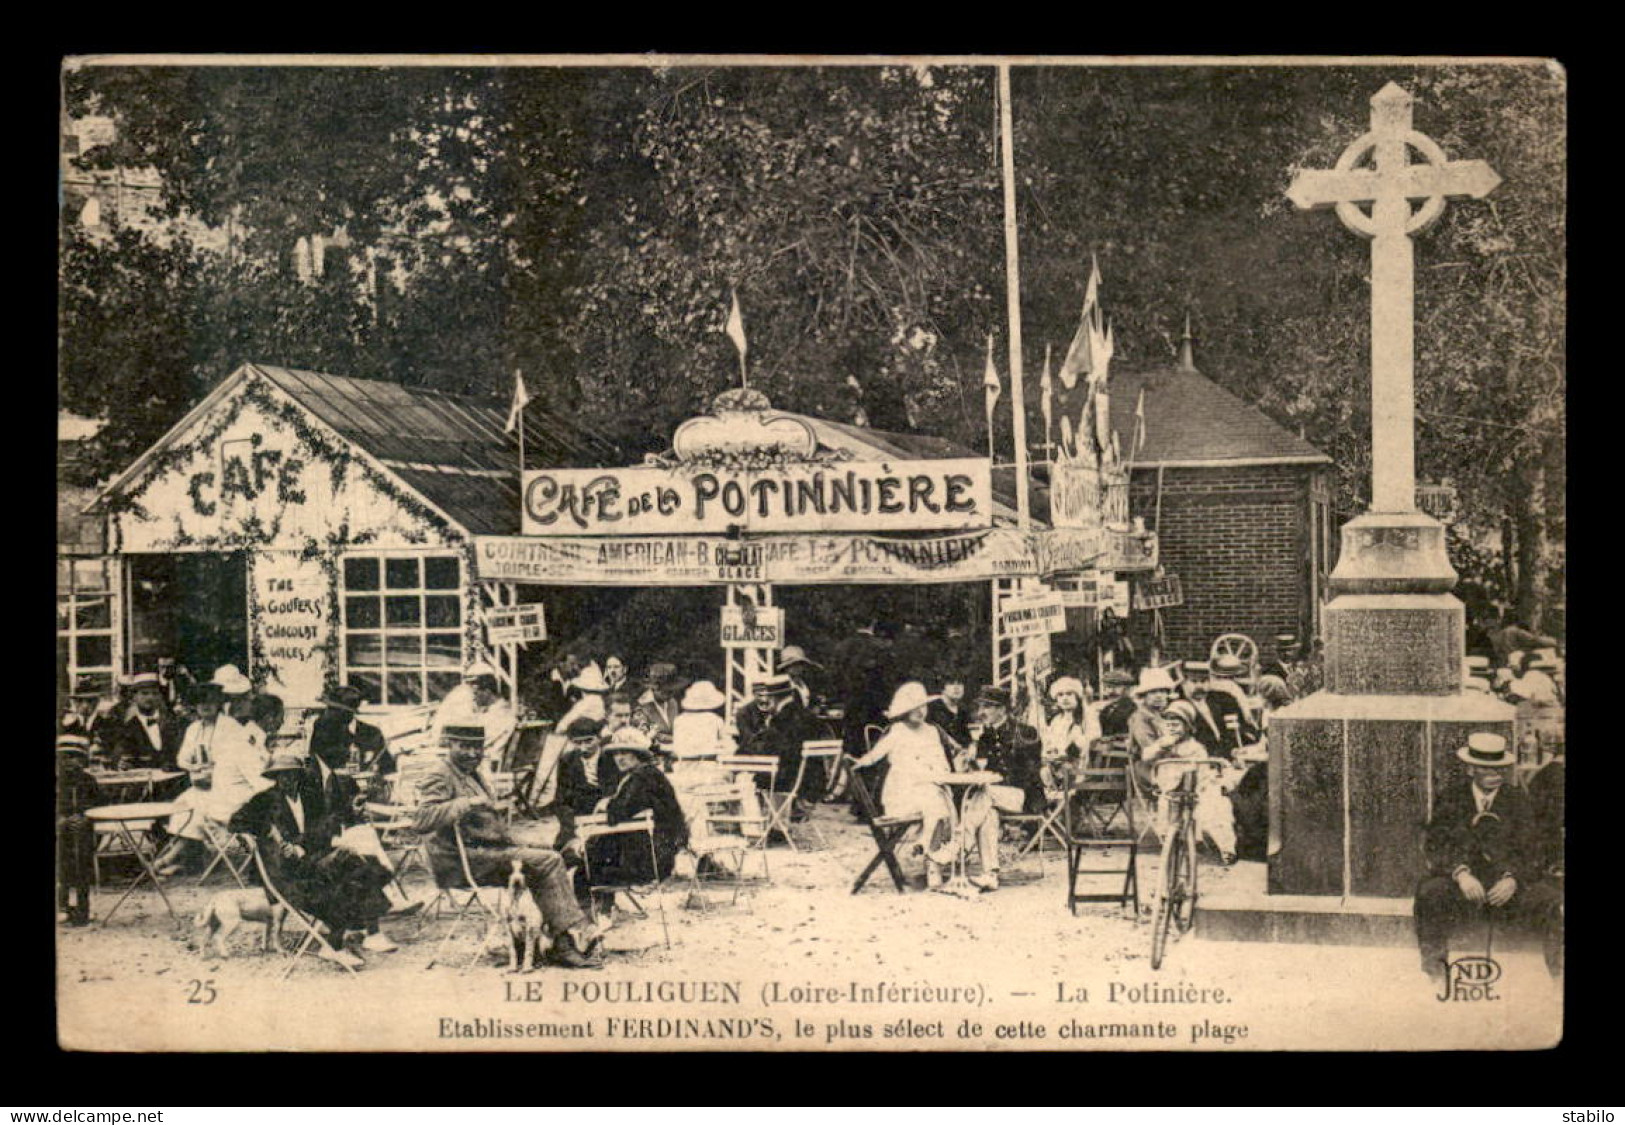 44 - LE POULIGUEN - LA POTINIERE - ETABLISSEMENT FERDINAND'S CAFE DE LA POTINNIERE - Le Pouliguen